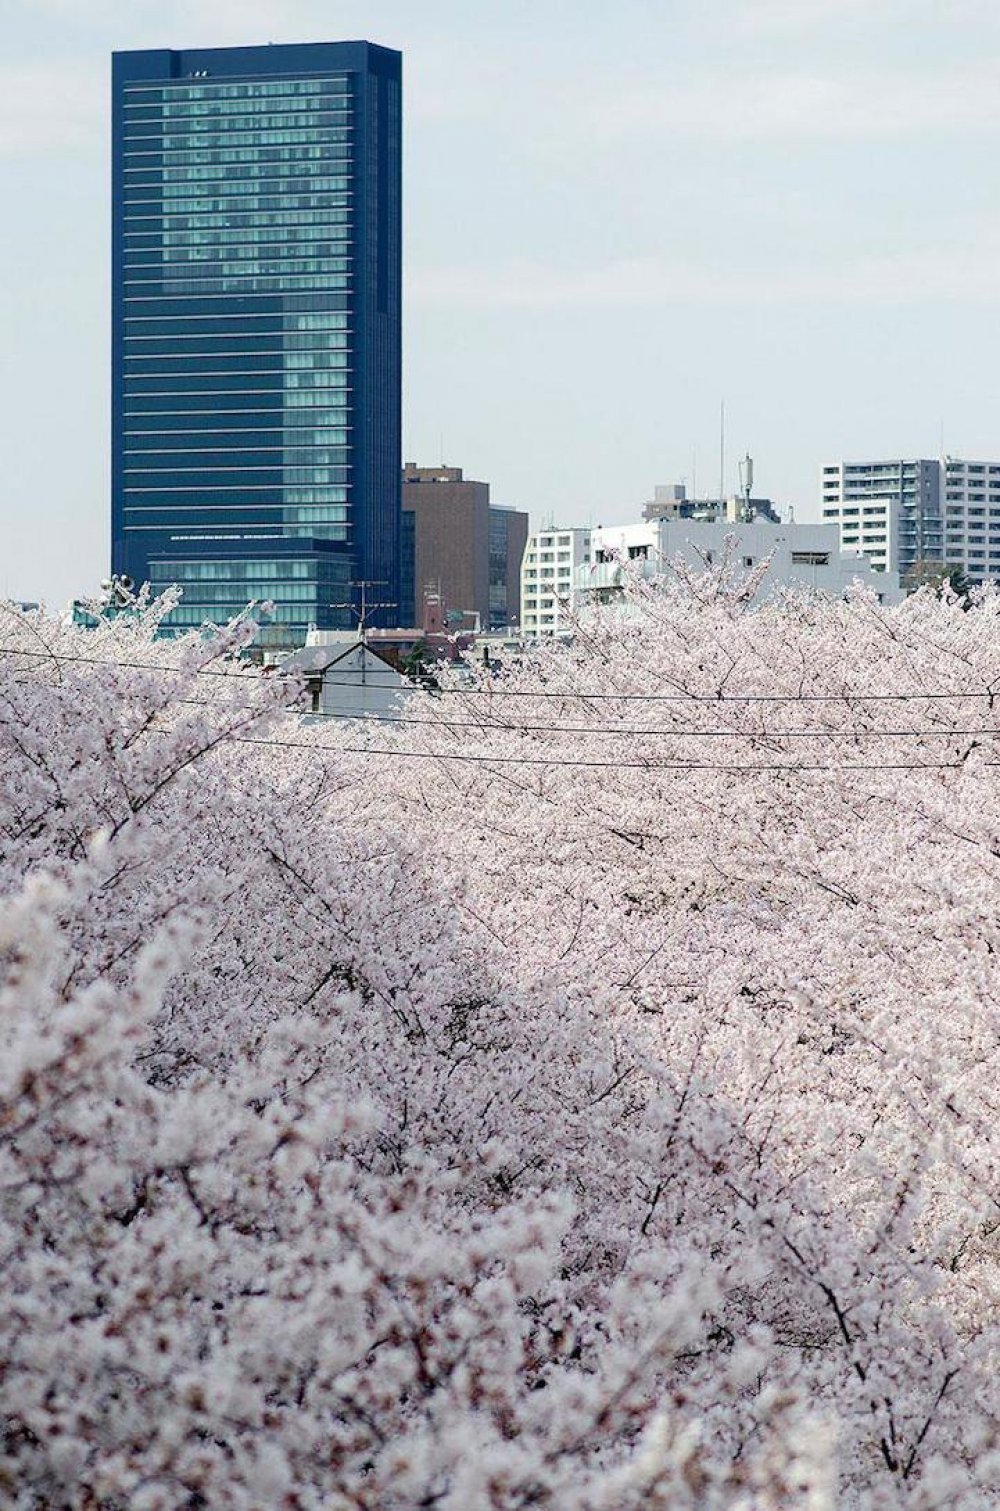 Японія, весна, сакура